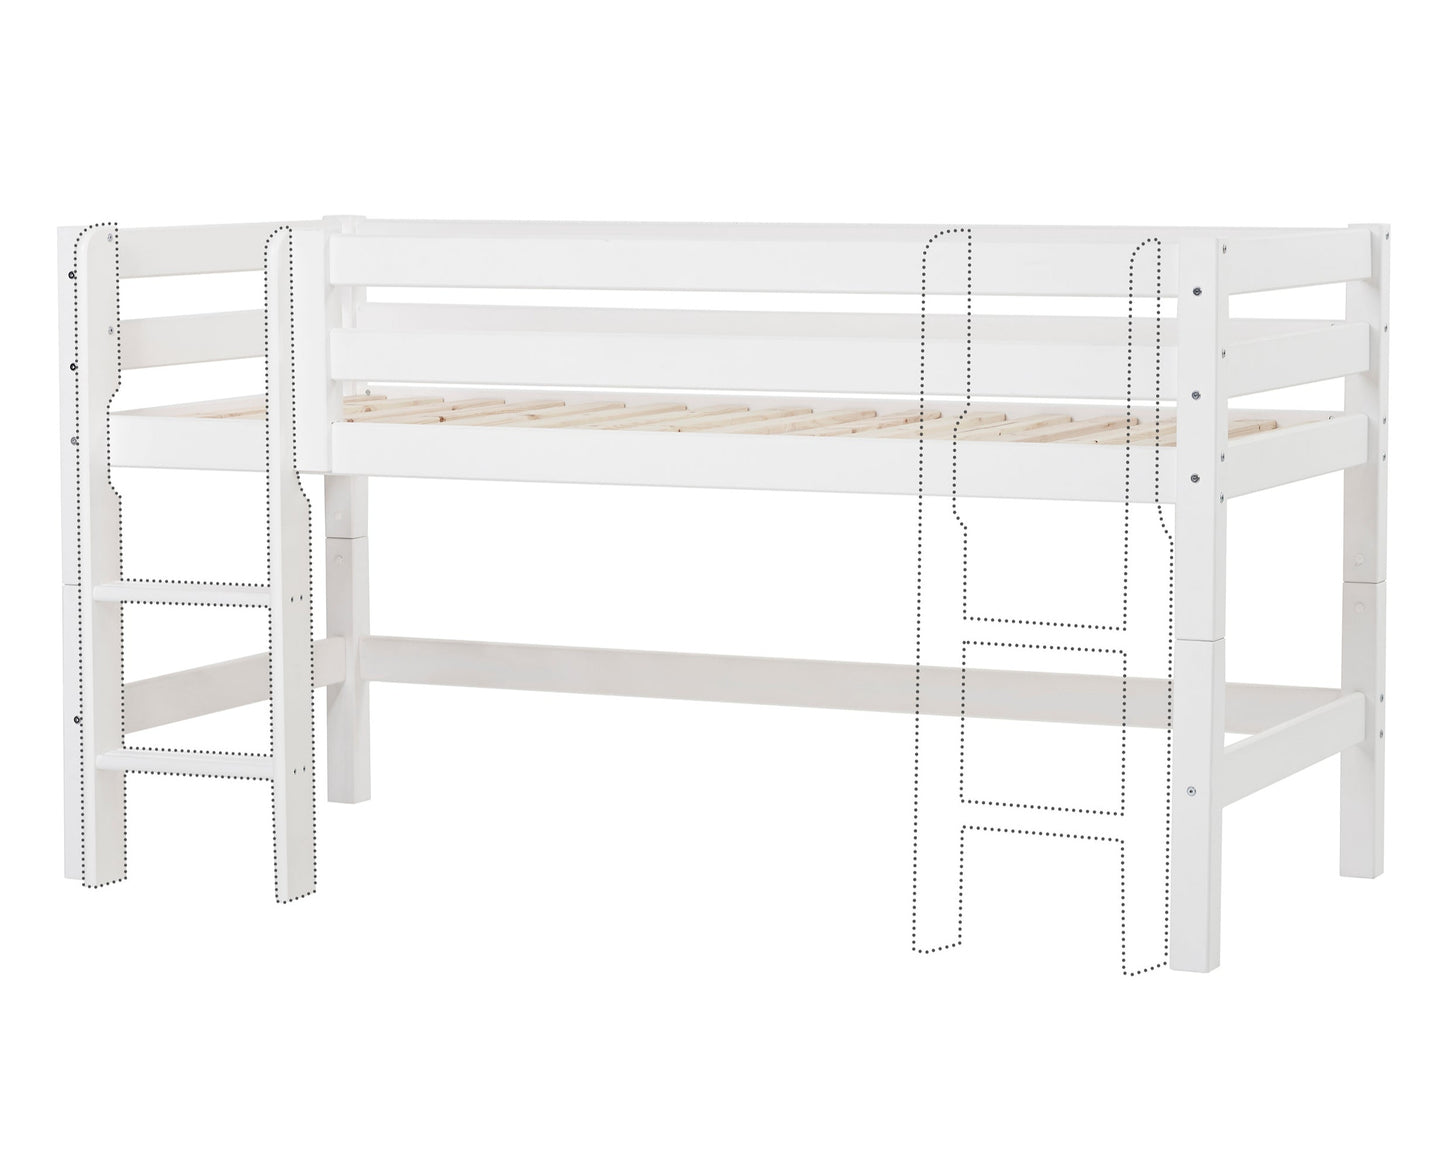 ECO Luxury - Half high bed - 90x200 cm - white